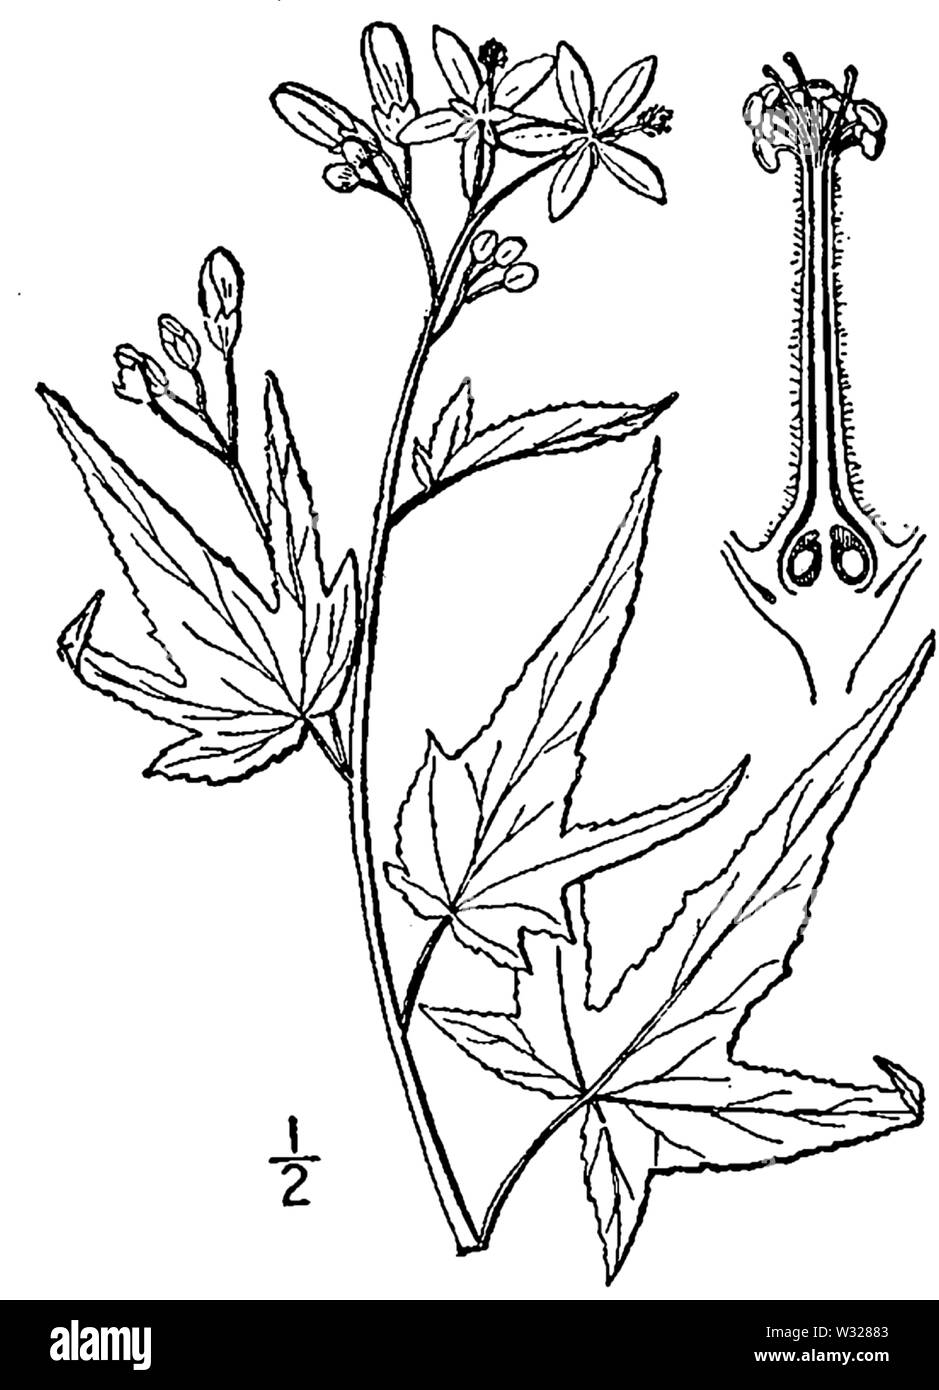 Botanical illustration of Sida hermaphrodita from 1913 Stock Photo - Alamy